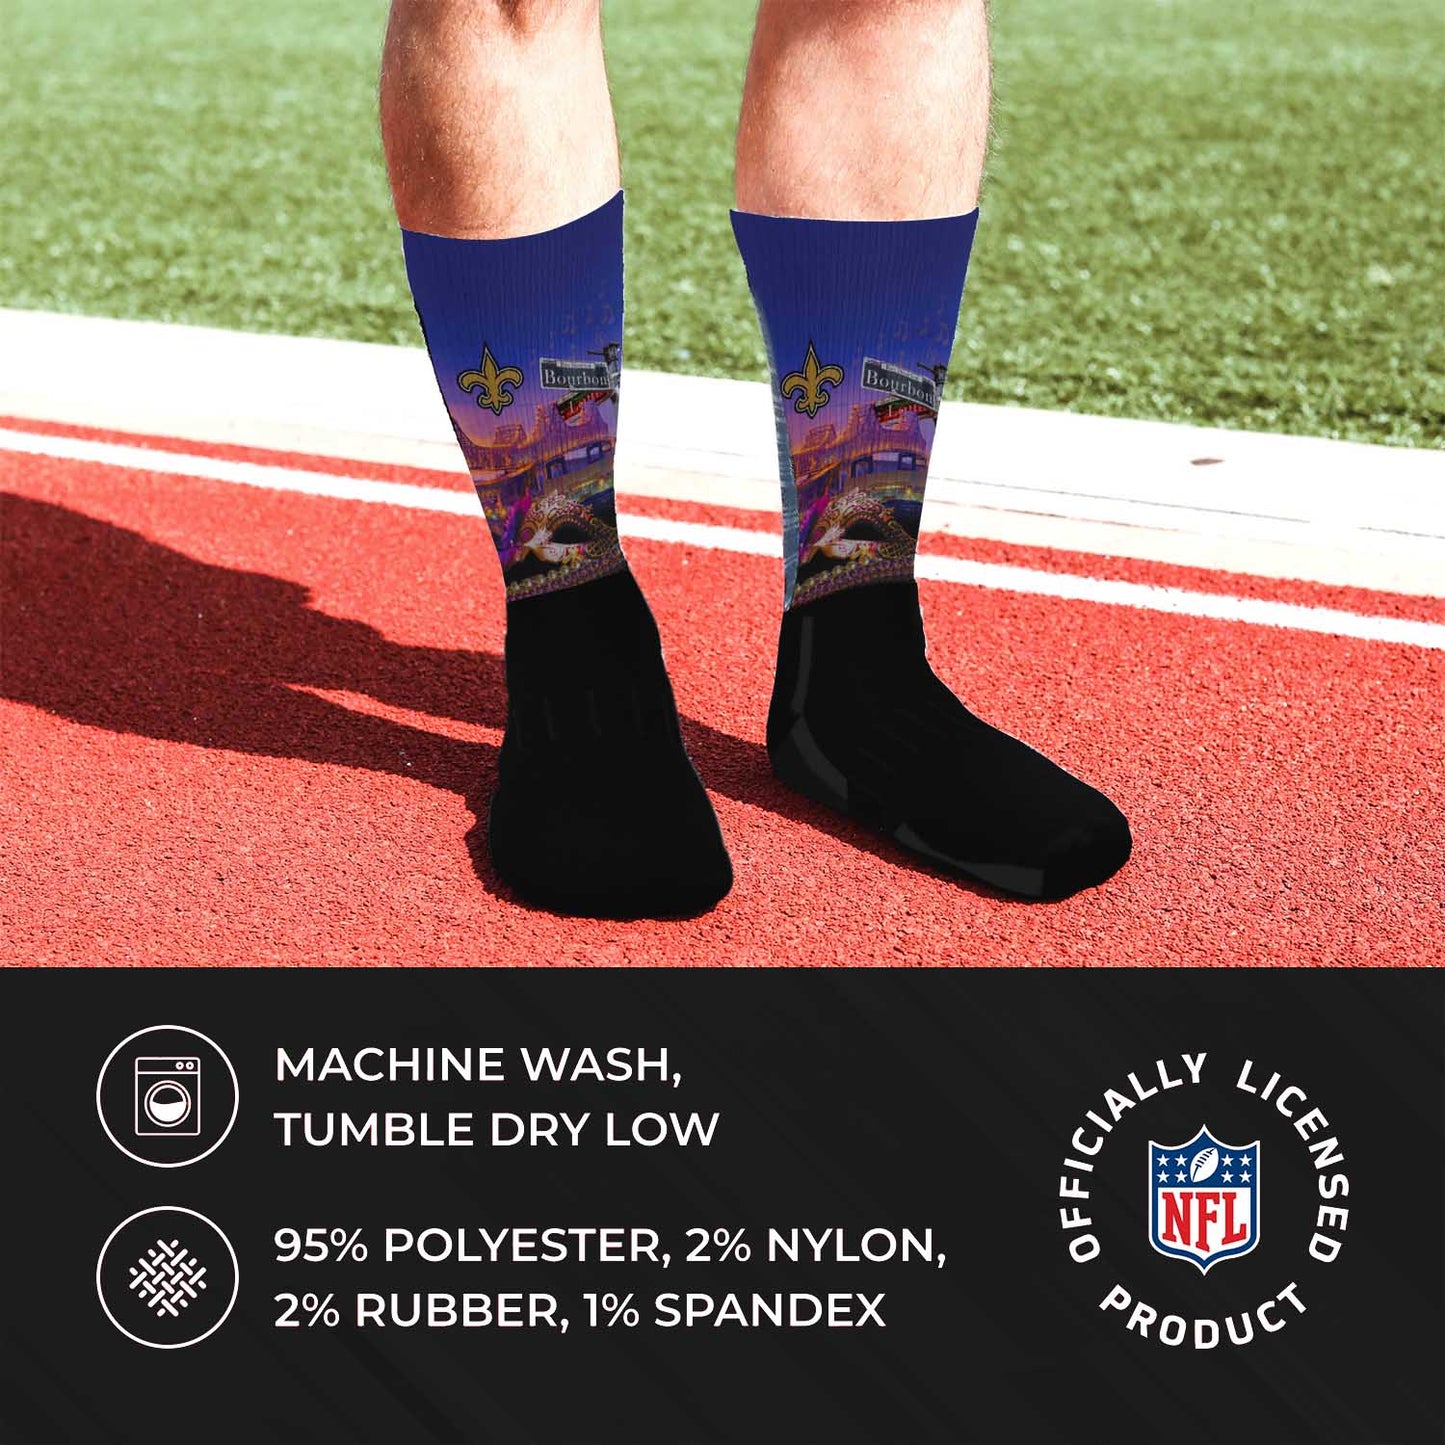 New Orleans Saints NFL Adult Zoom Location Crew Socks - Black